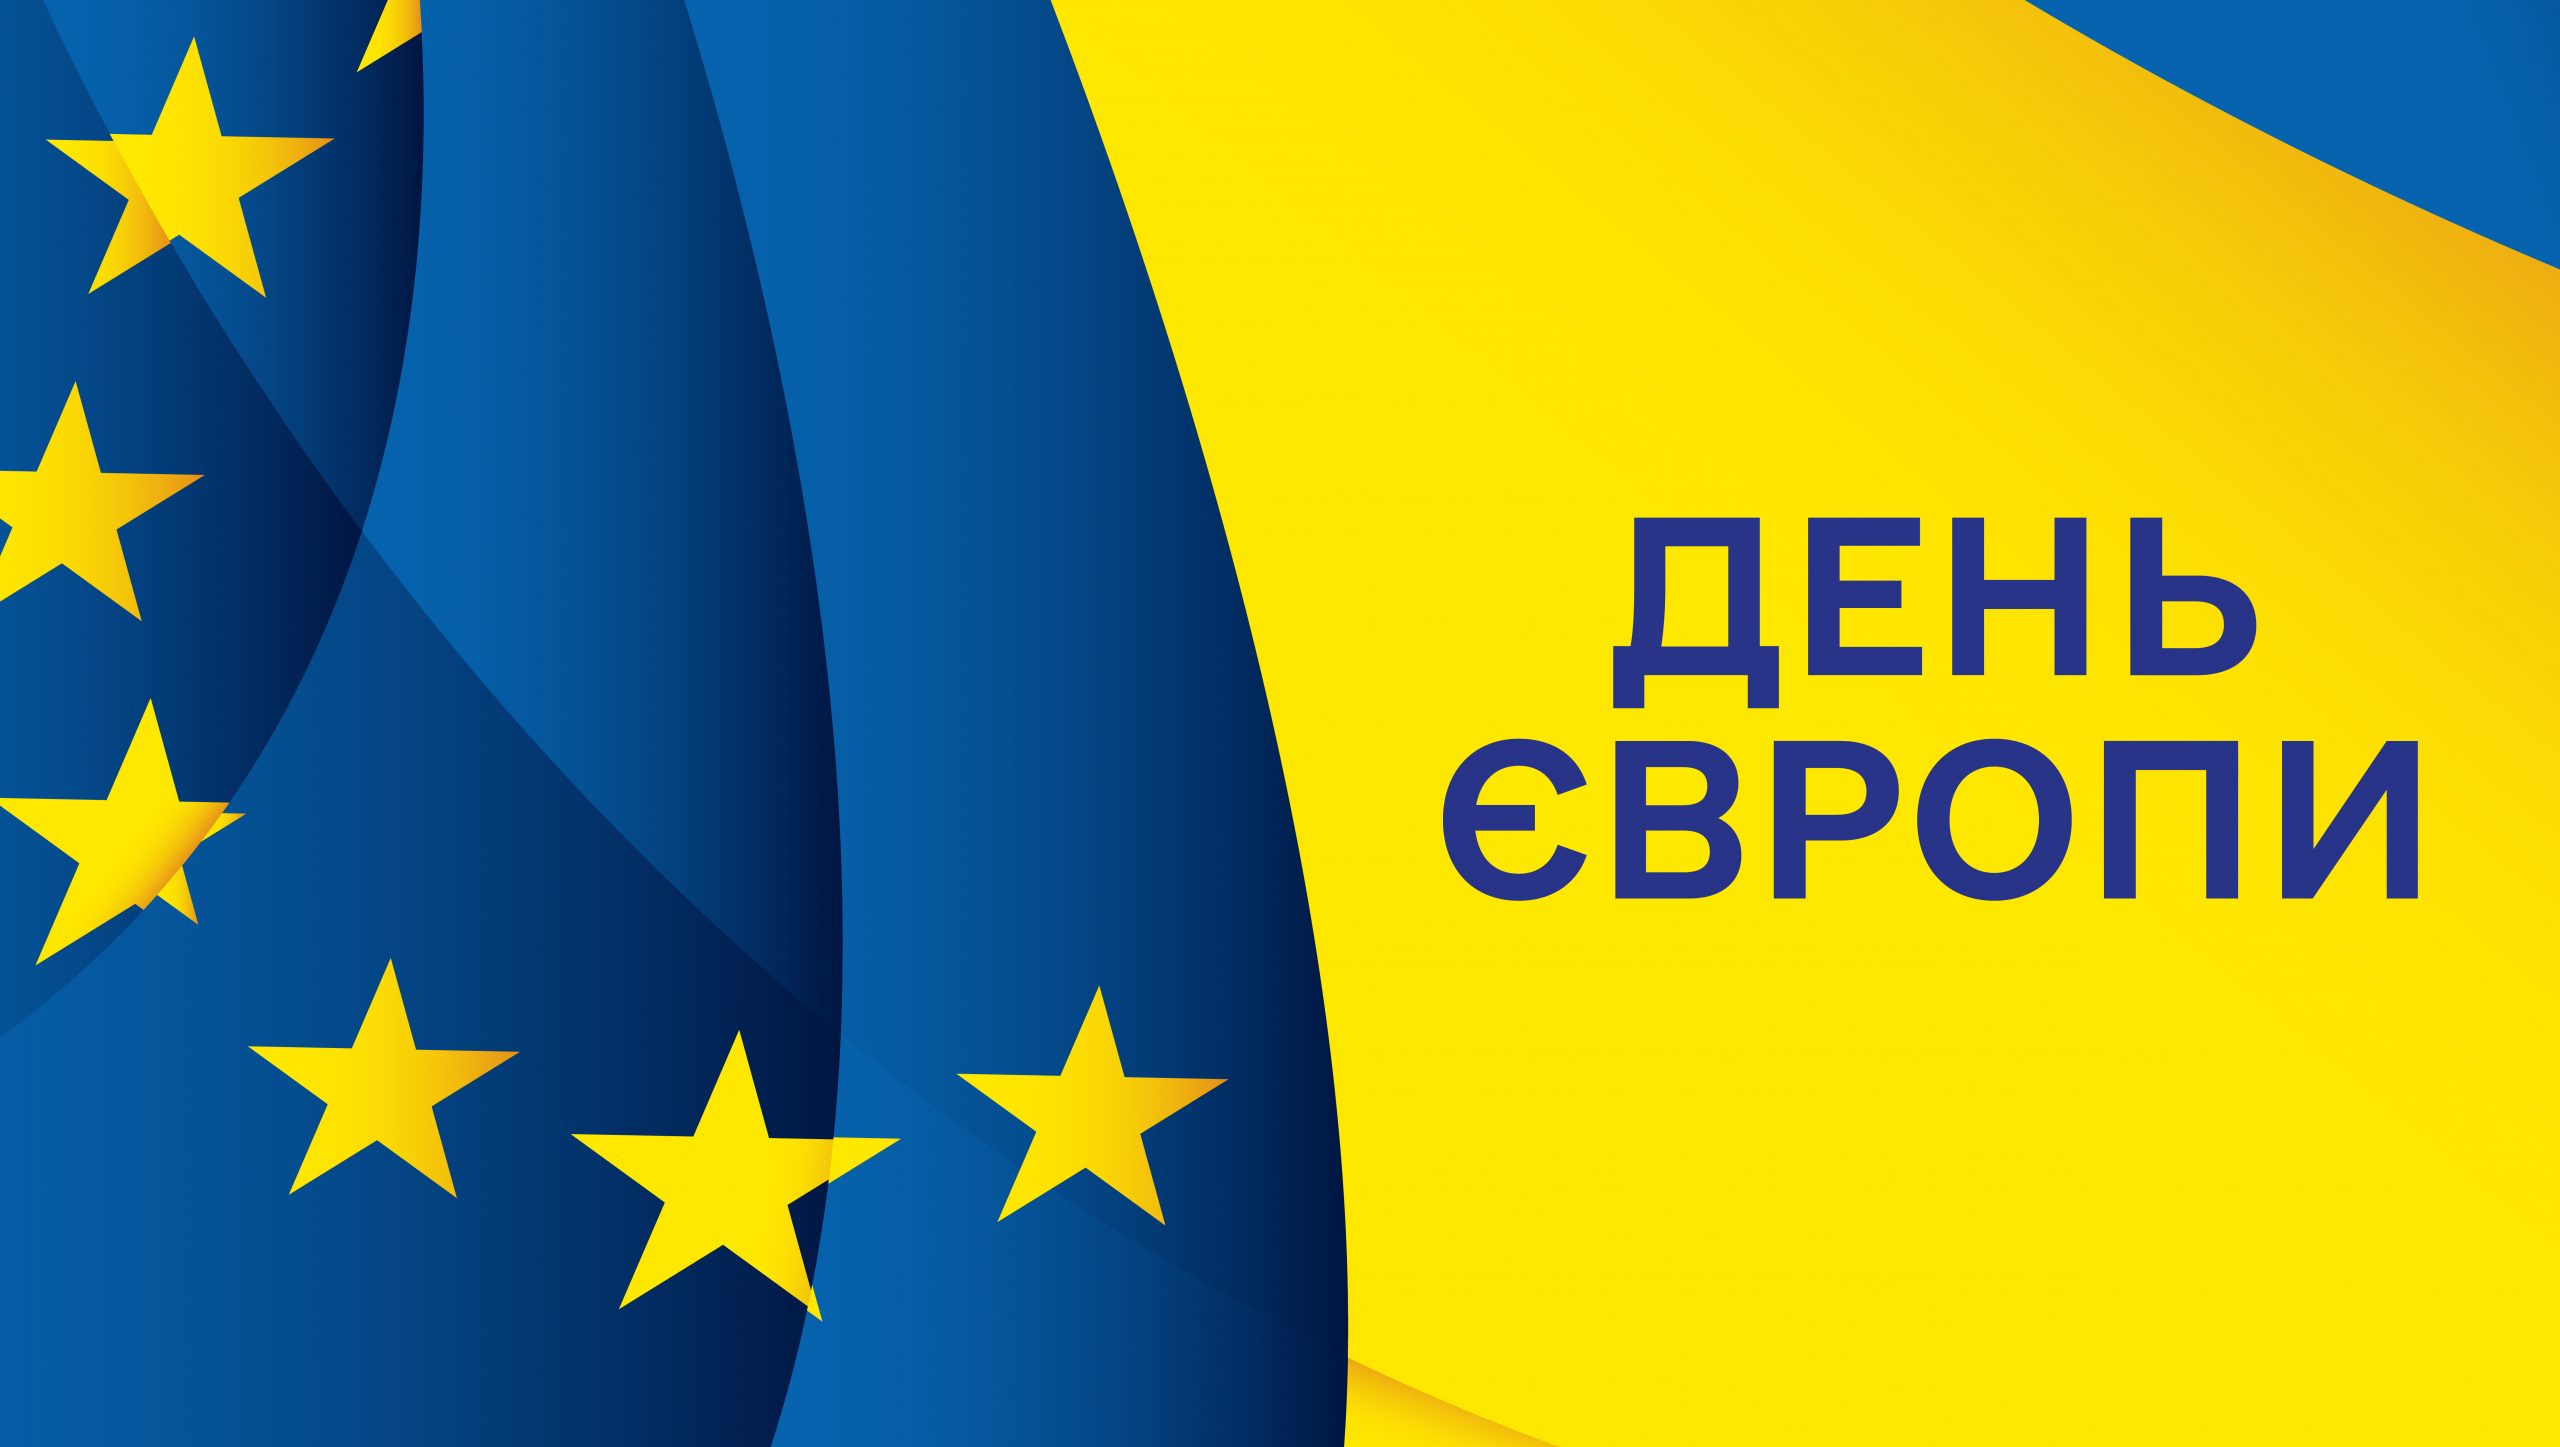 Україна вперше відзначає День Європи 9 травня